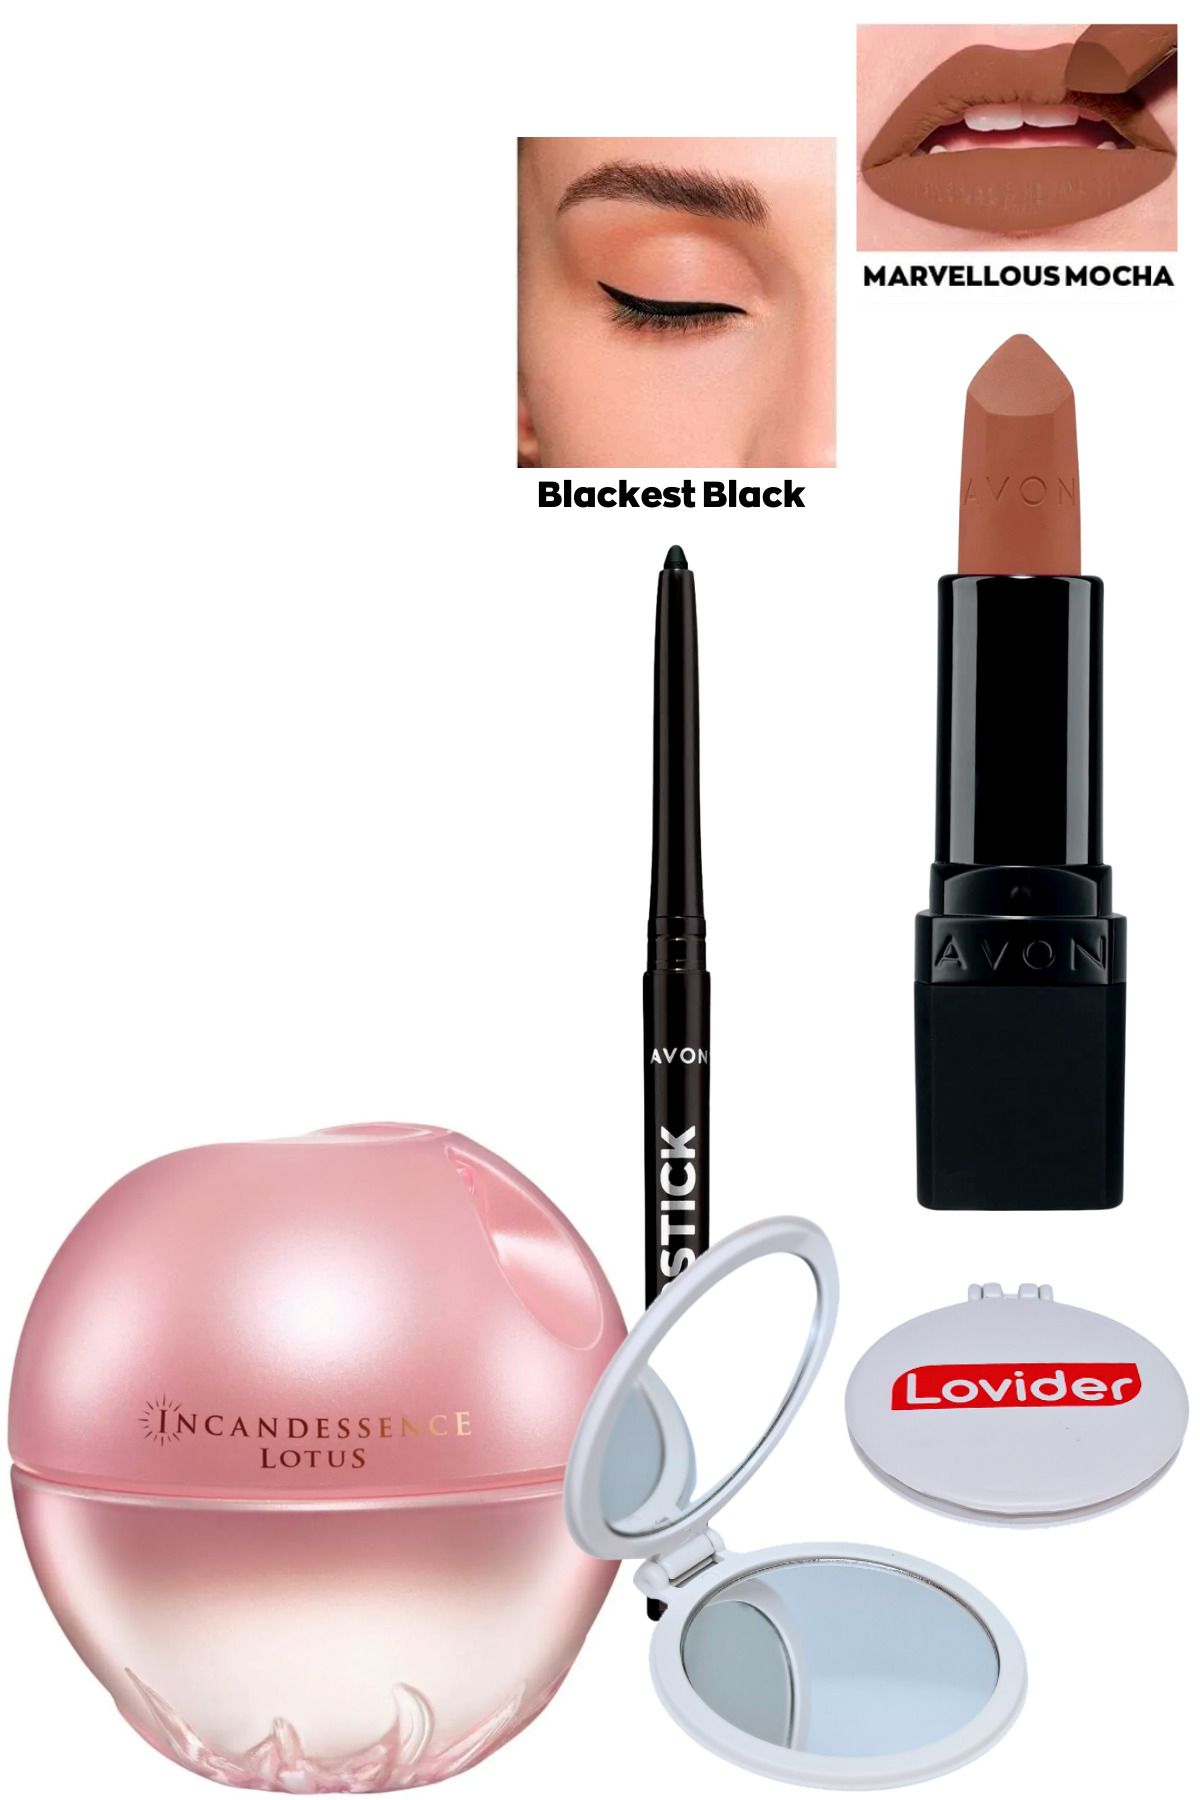 Avon Incandessence Lotus Kadın Parfüm + Siyah Göz Kalemi + Marvellous Mocha Mat Ruj + Lovider Cep Aynası